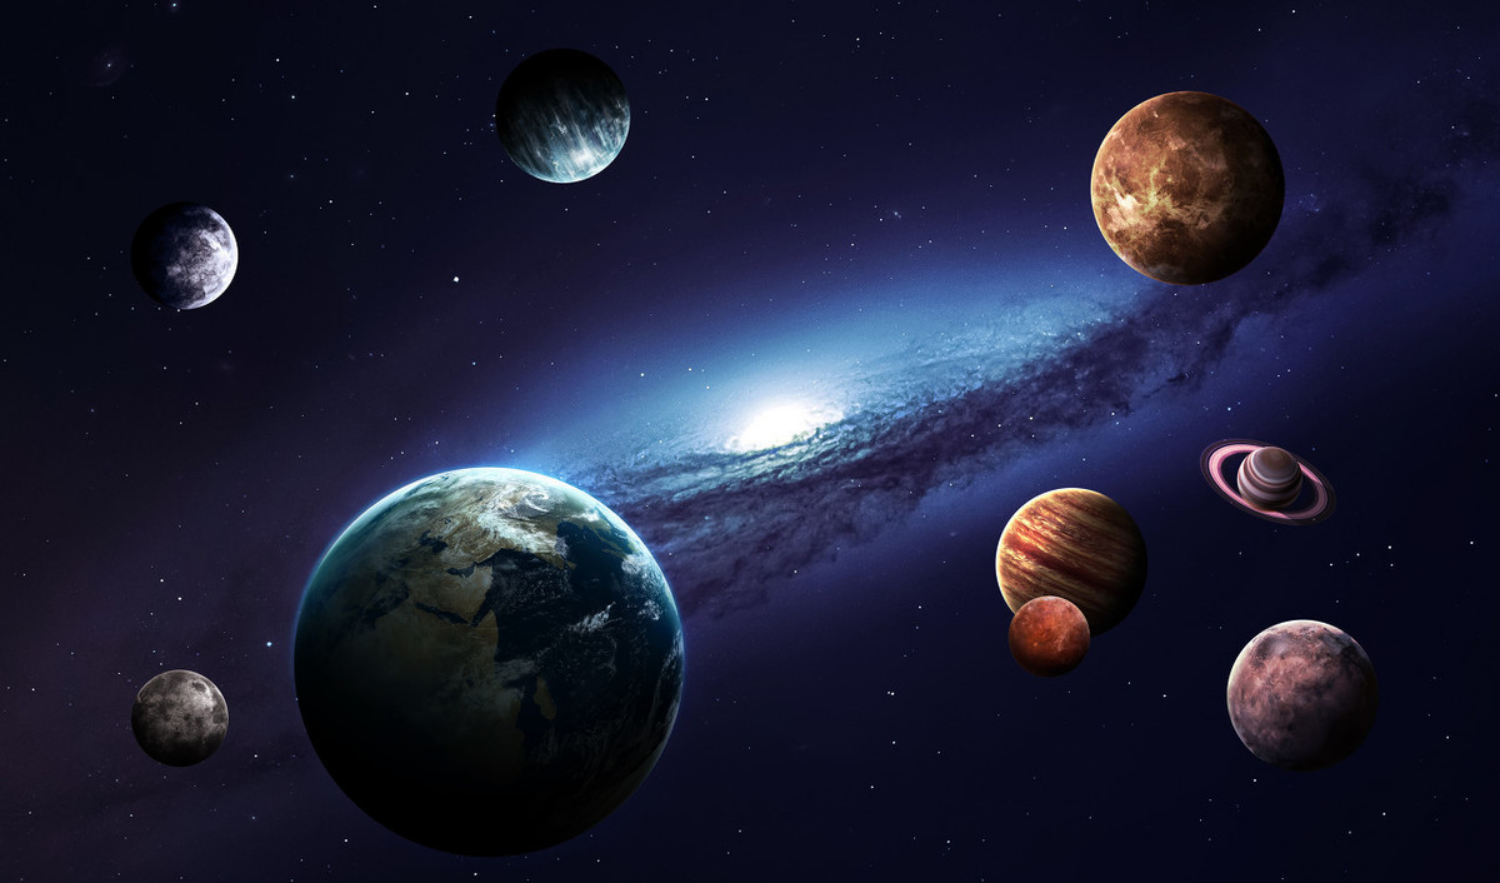 如果某个星球突然从太阳系中消失,人类会怎样呢?